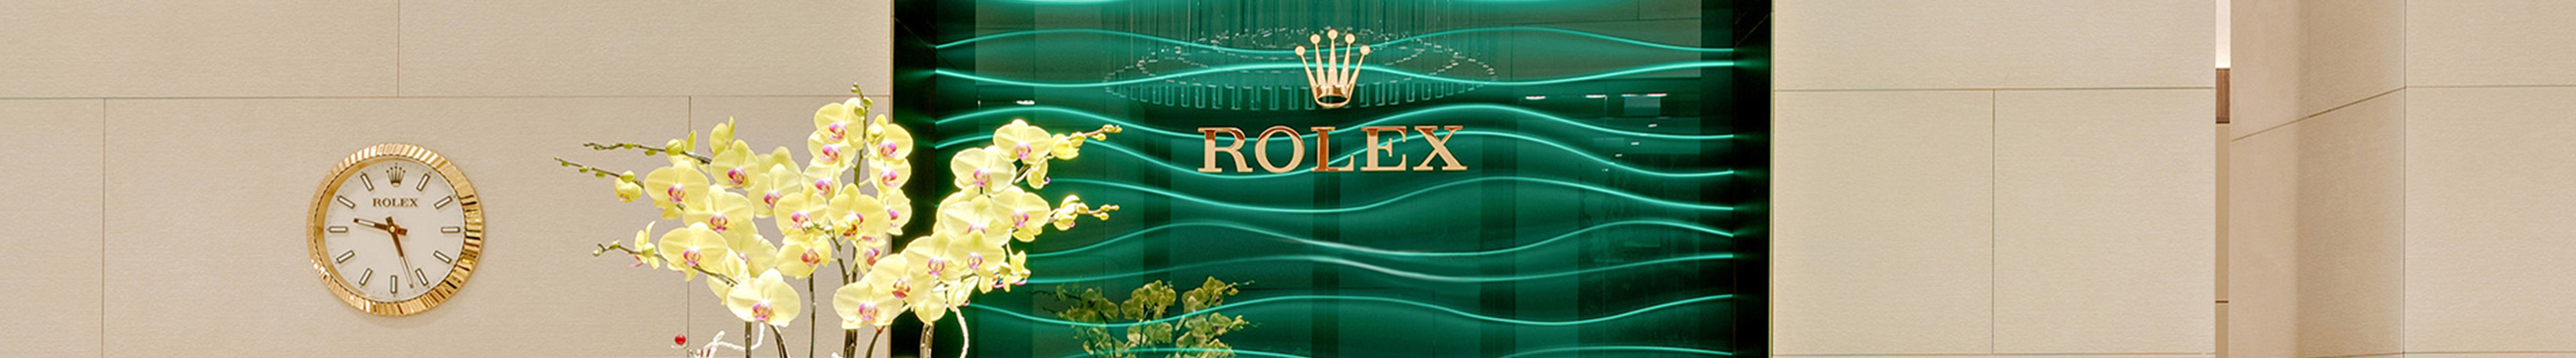 Im Rolex Showroom von Juweliere Mahlberg & Meyer gibt es eine grüne Glasvertäfelung mit einem großen goldenen Rolex Logo